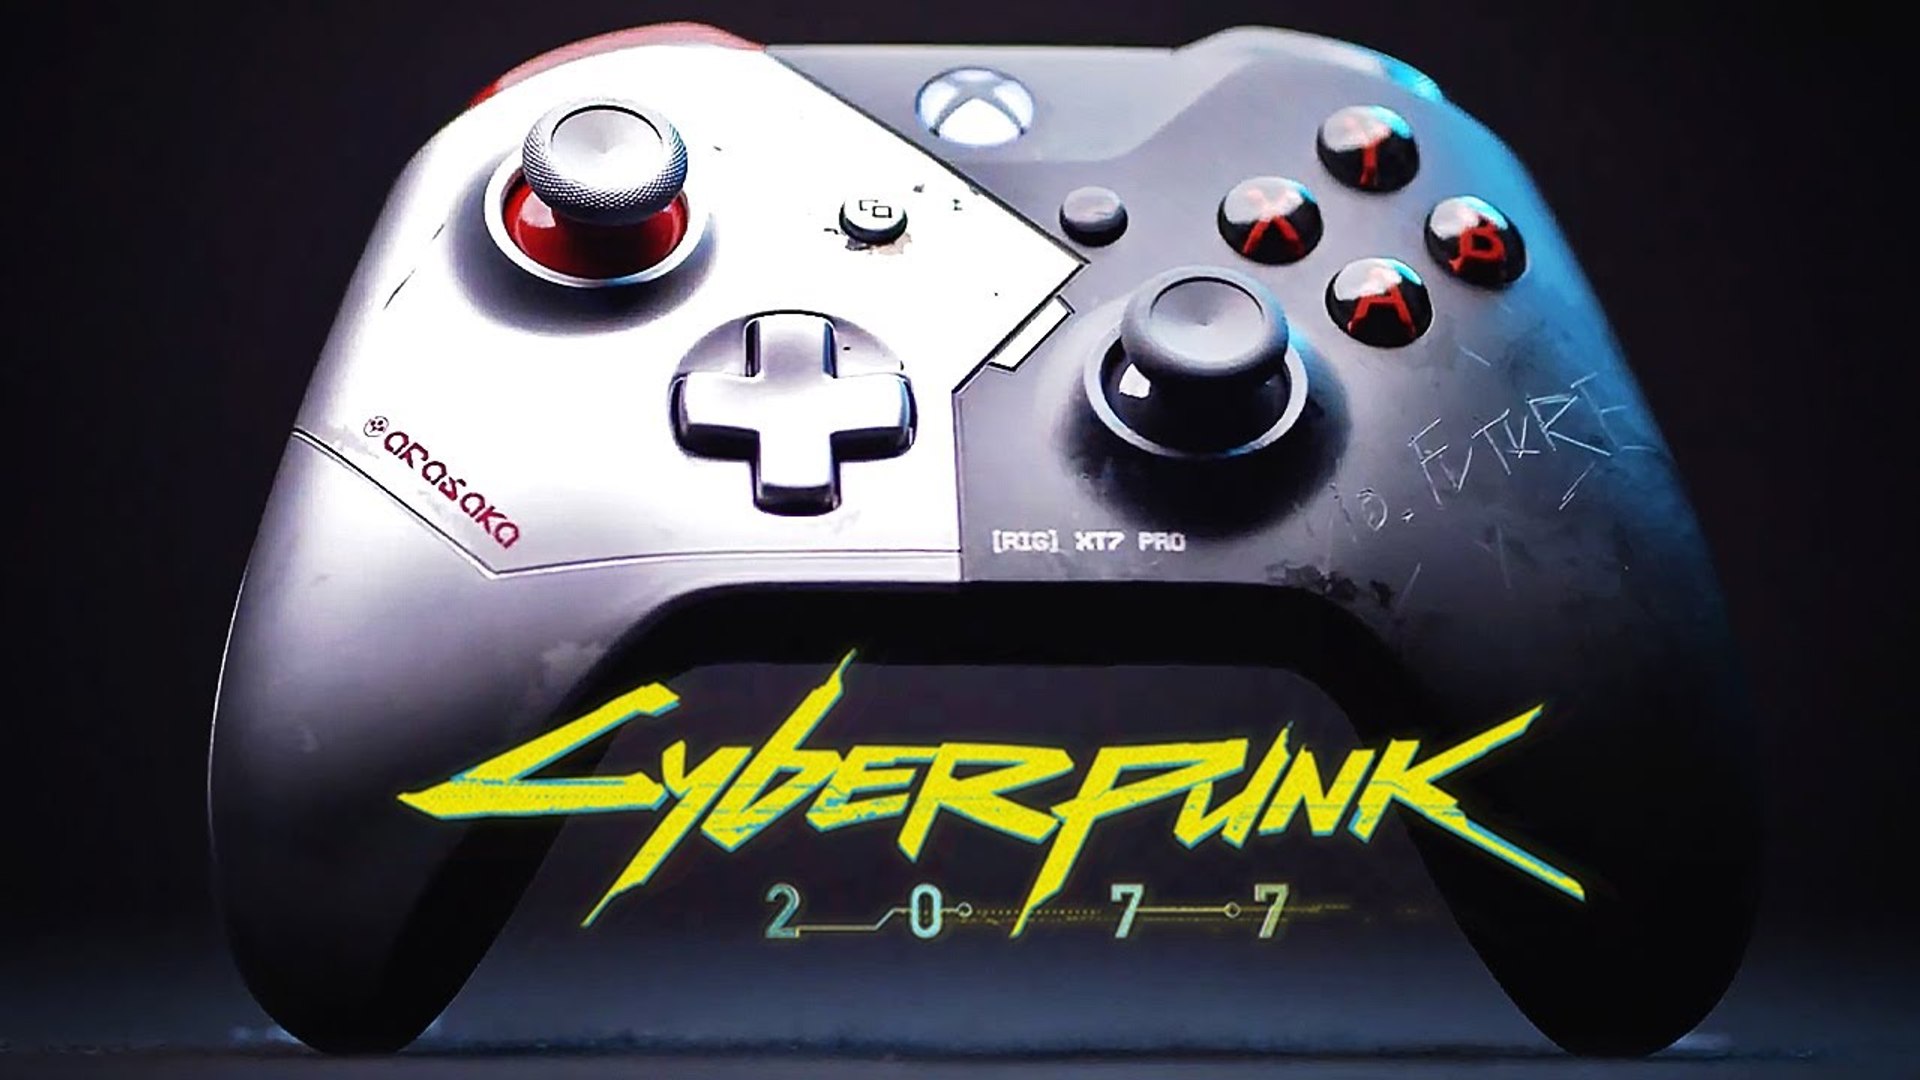 Xbox one cyberpunk limited фото 42